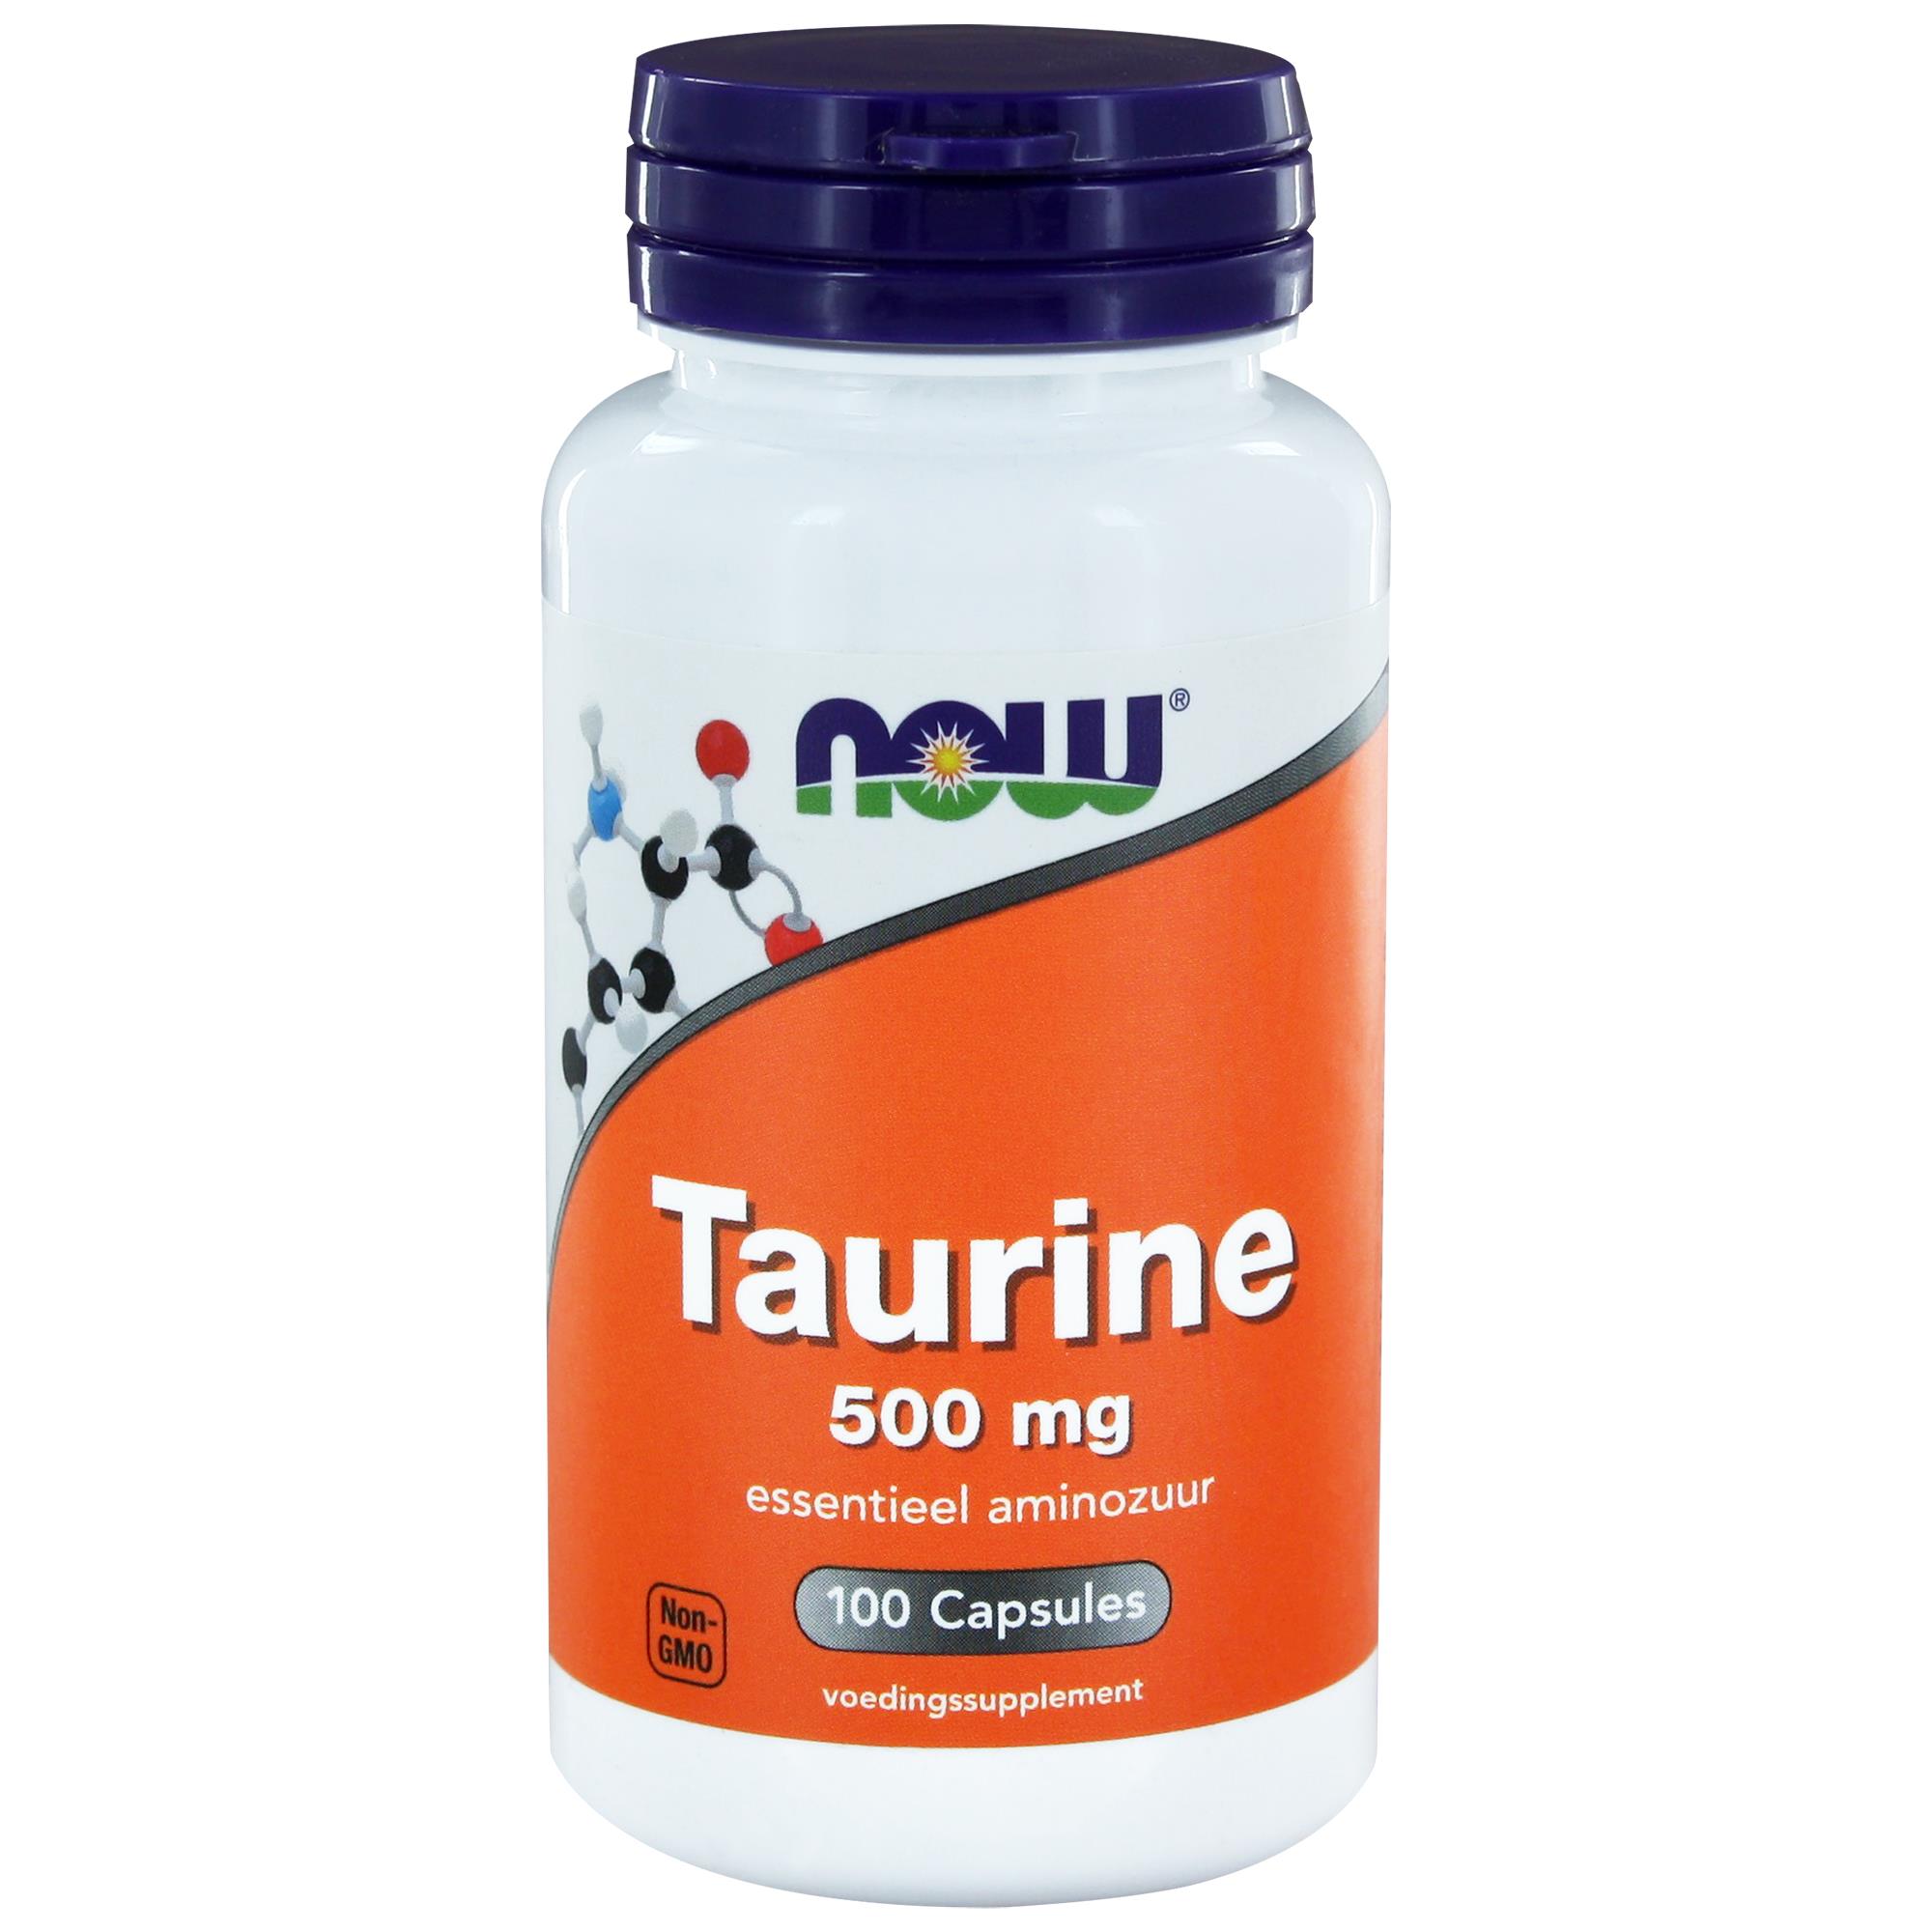 Таурин когда принимать. Now таурин 500 мг. Now foods, таурин, 500 мг, 100 капсул. Now Taurin 500 мг 100 капсул. Now Taurine таурин 500 мг 100 капс..